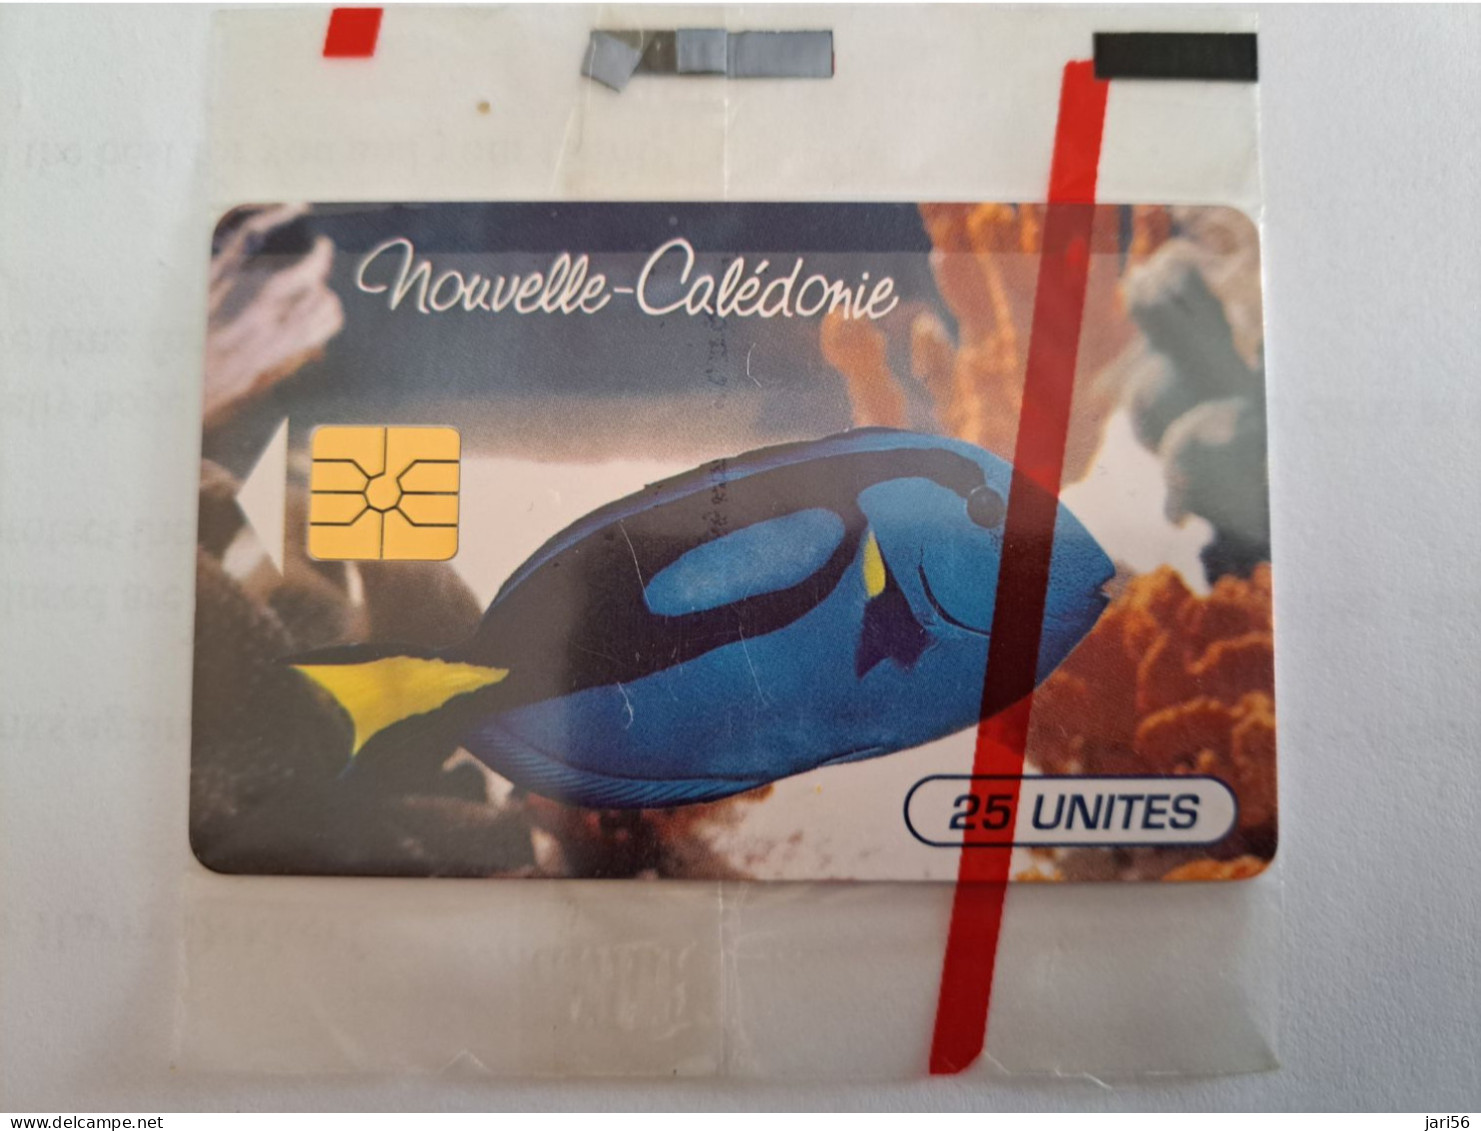 NOUVELLE CALEDONIA  CHIP CARD 25  UNITS   TROPICAL FISH BLEU    LOT 00122  / MINT IN WRAPPER  ** 13545 ** - Nouvelle-Calédonie